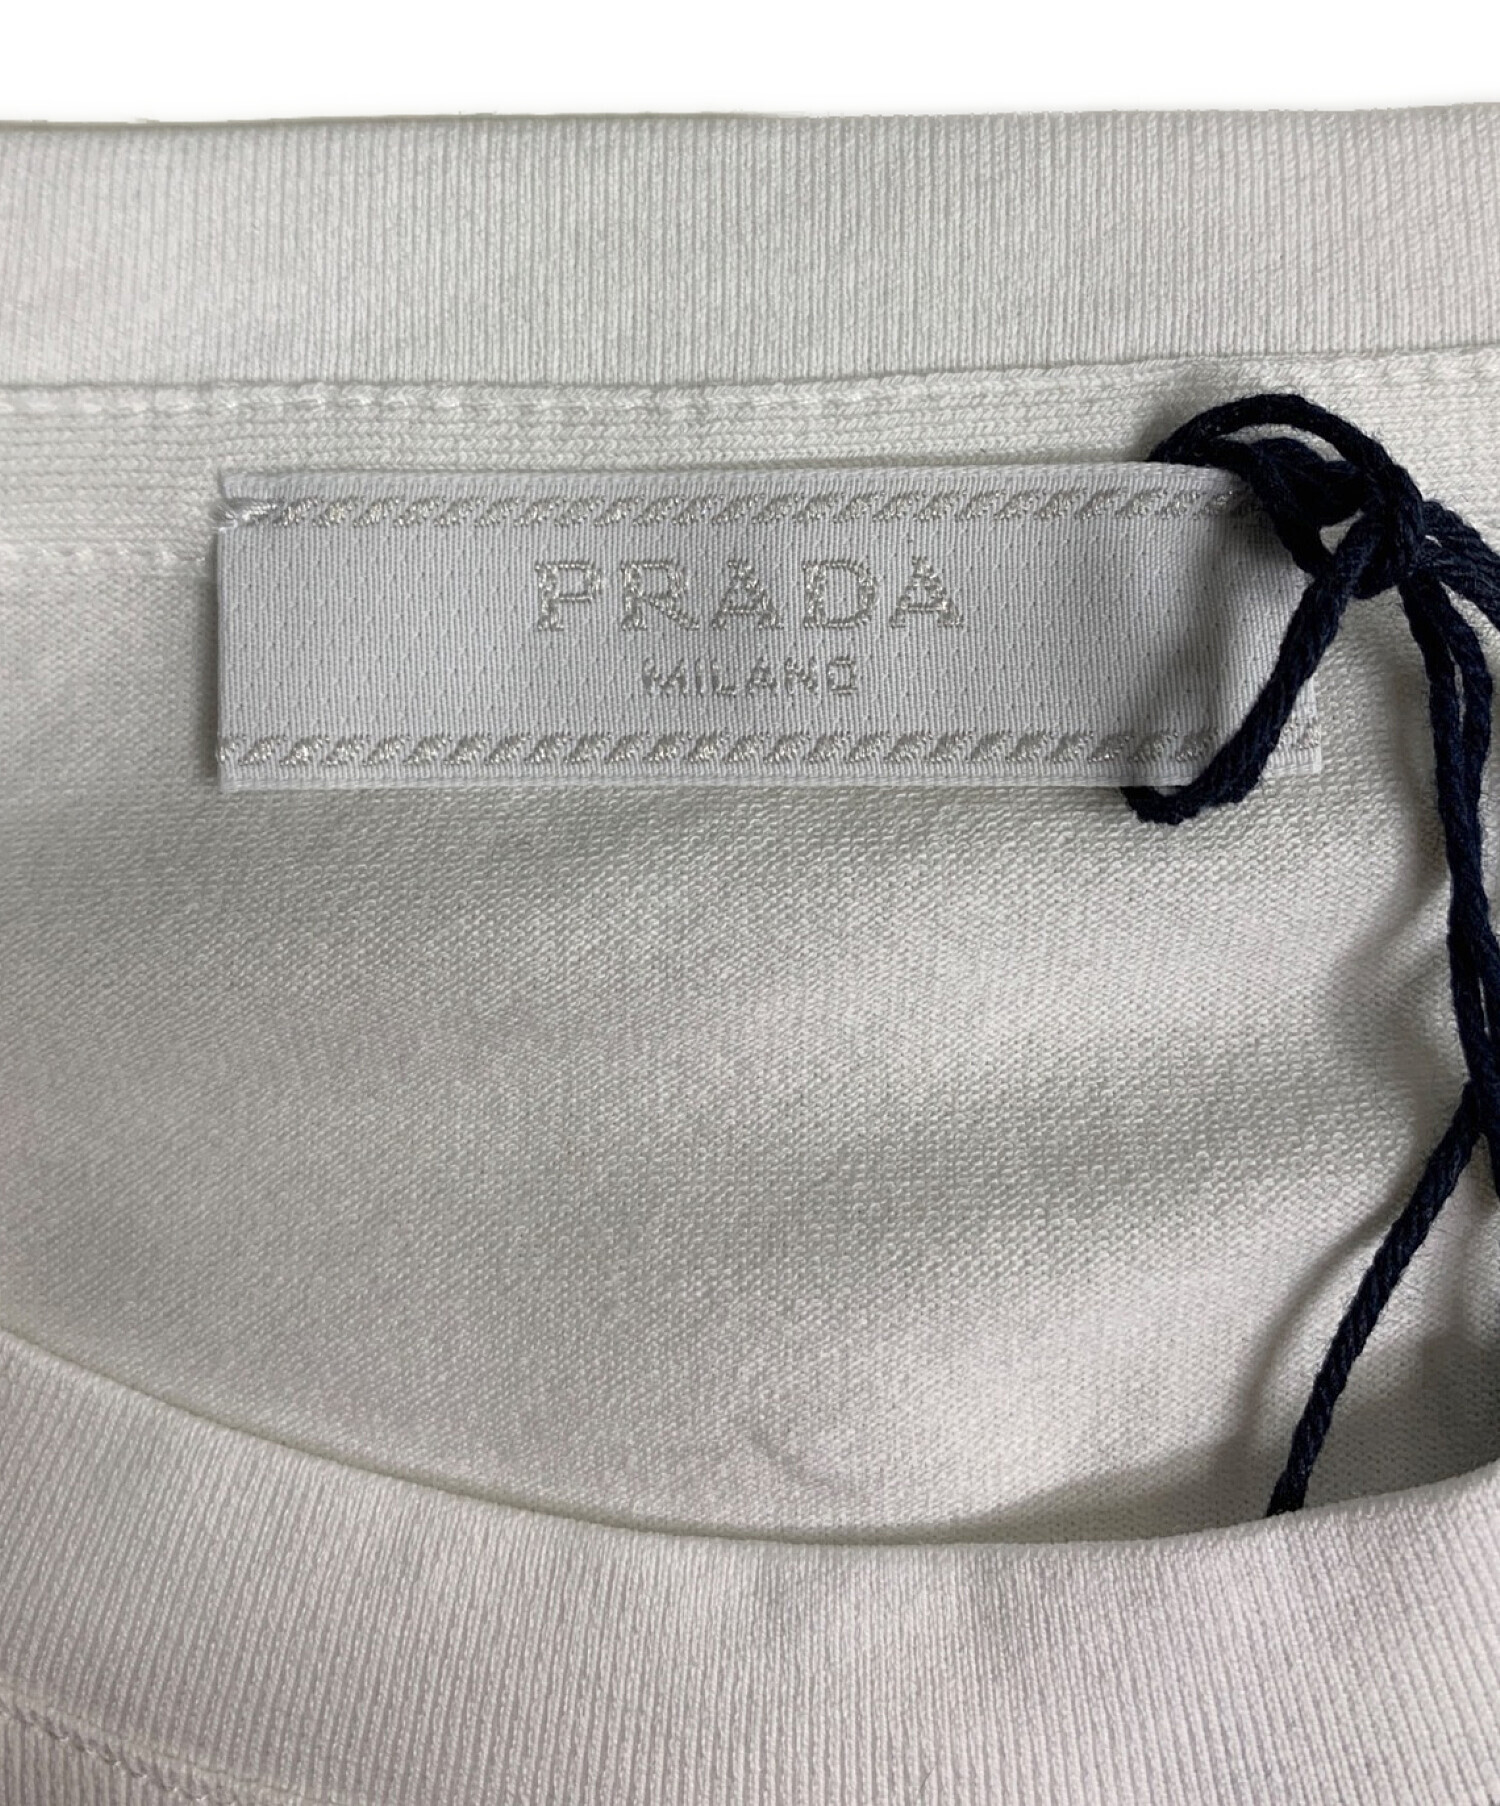 中古・古着通販】PRADA (プラダ) Tシャツ ホワイト サイズ:M 未使用品